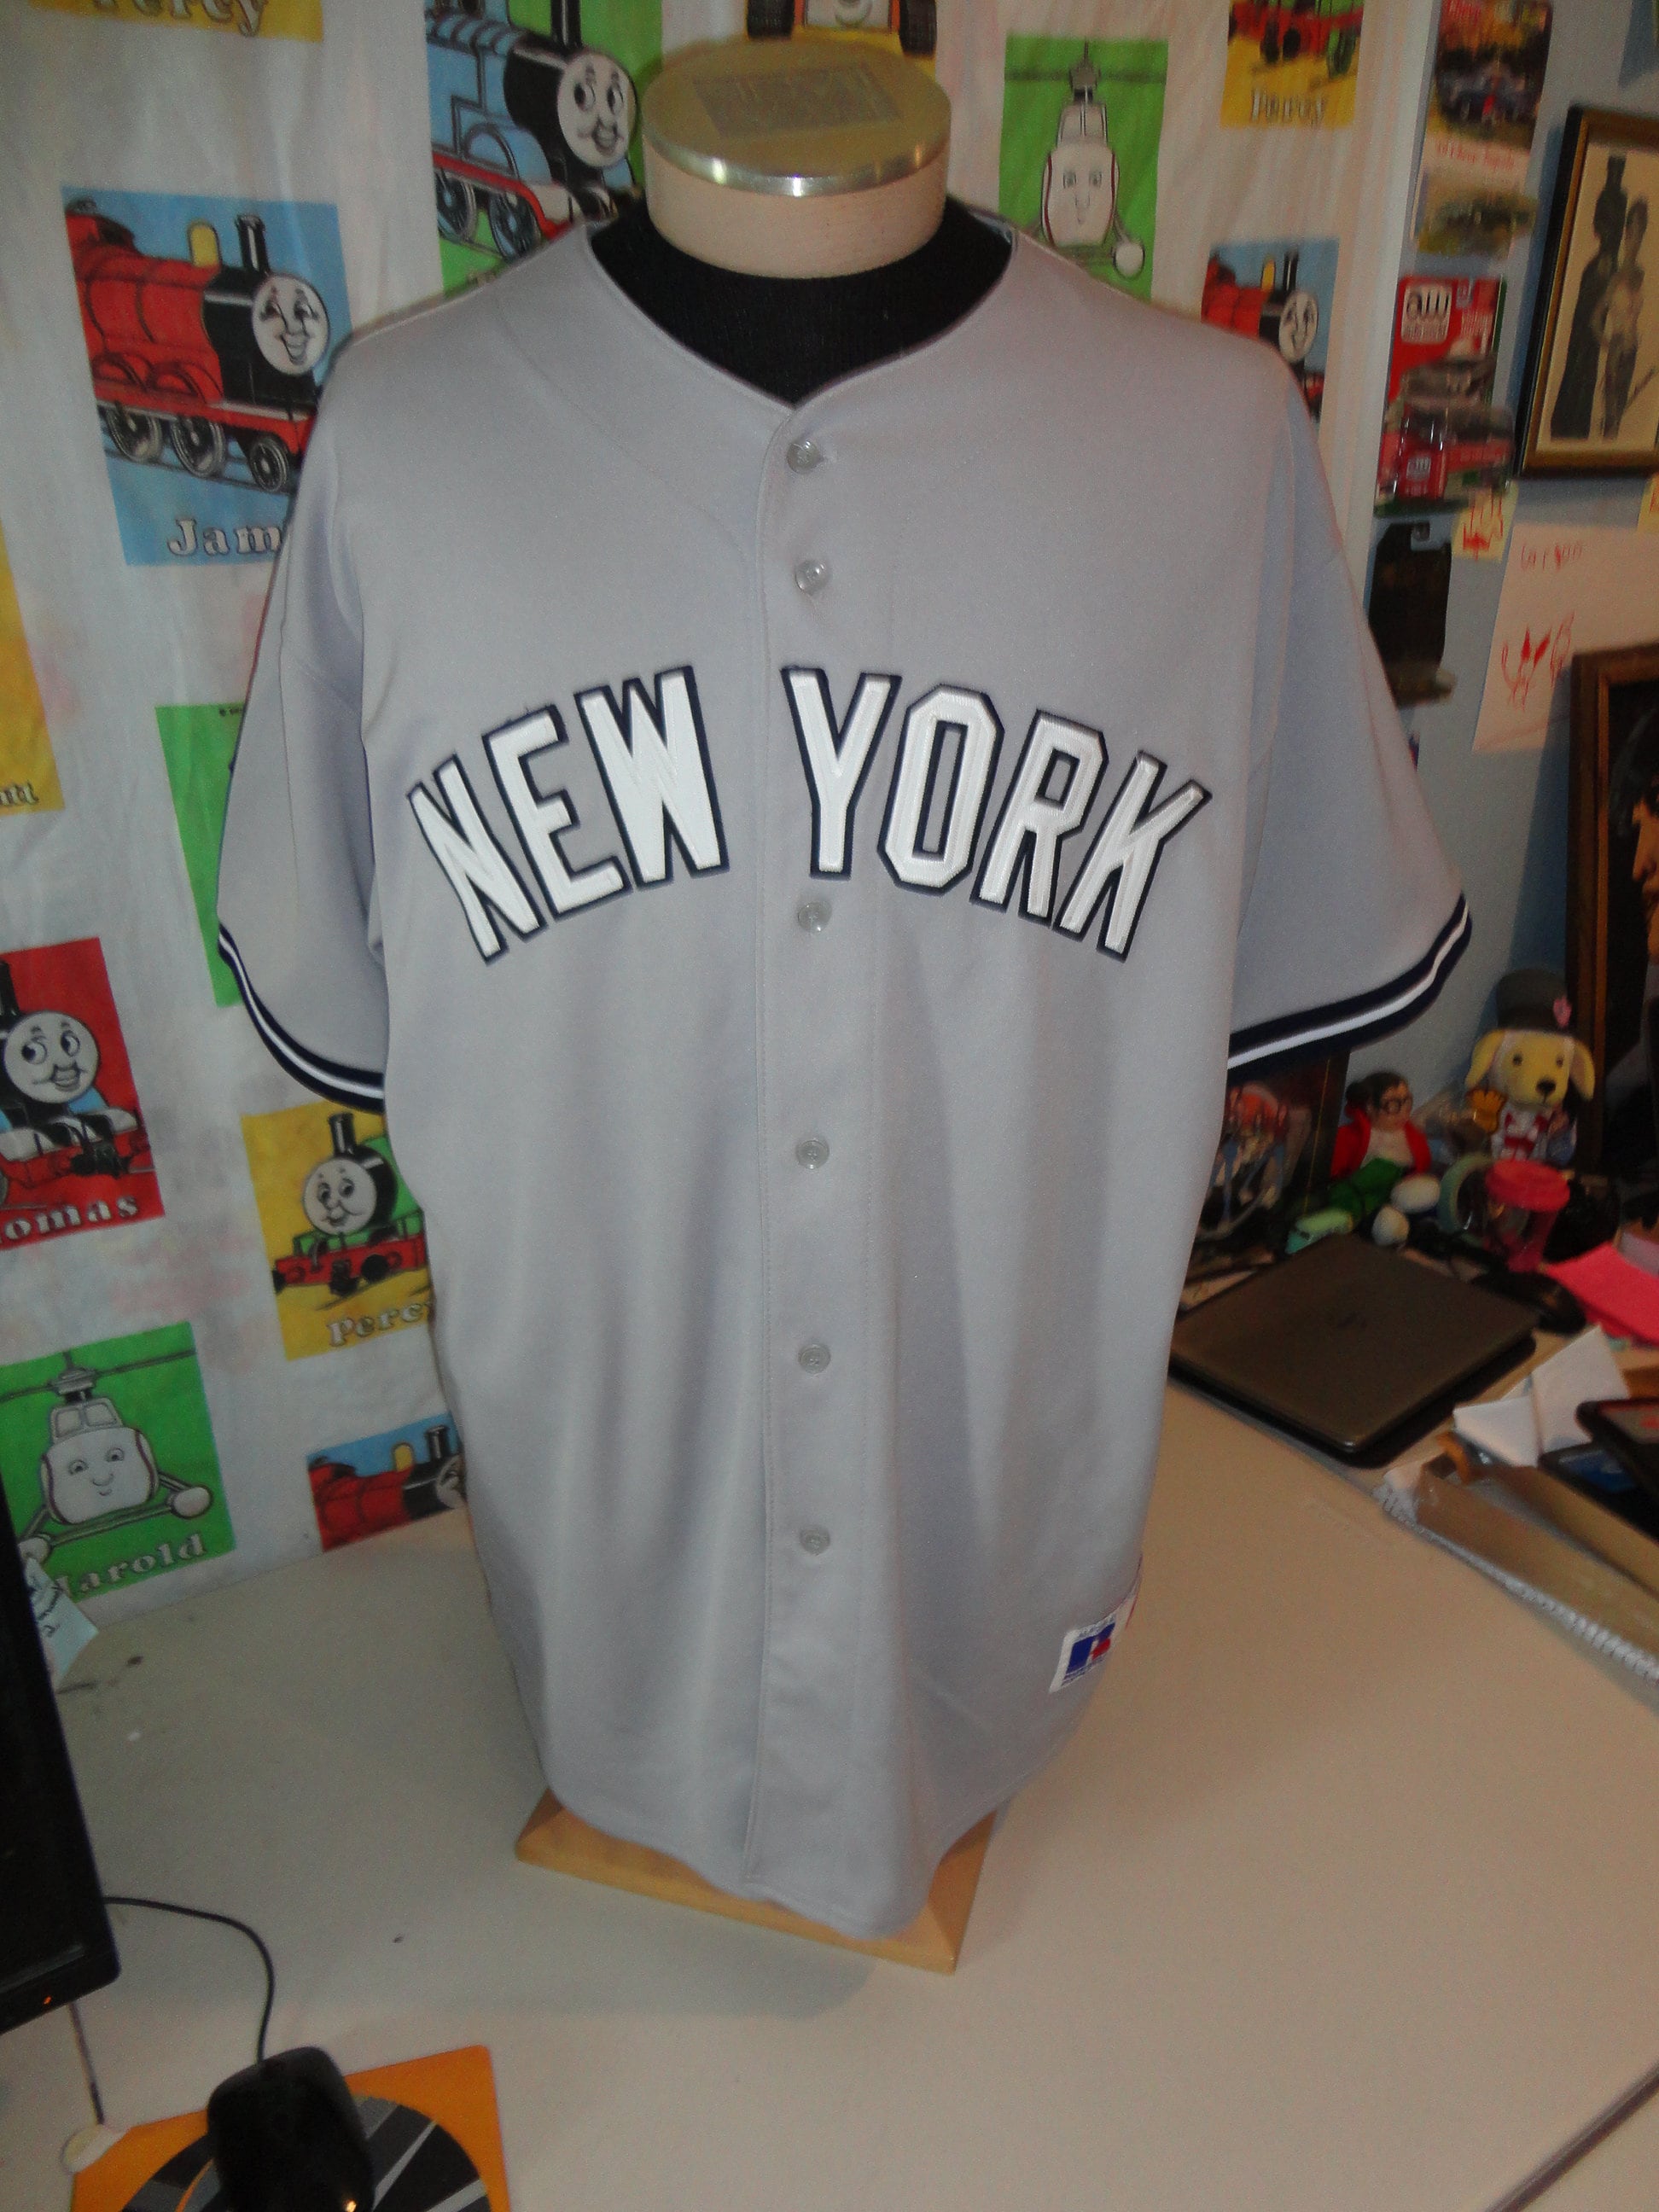 Starter New York Yankees Derek Jeter Stitched Jersey Size XL